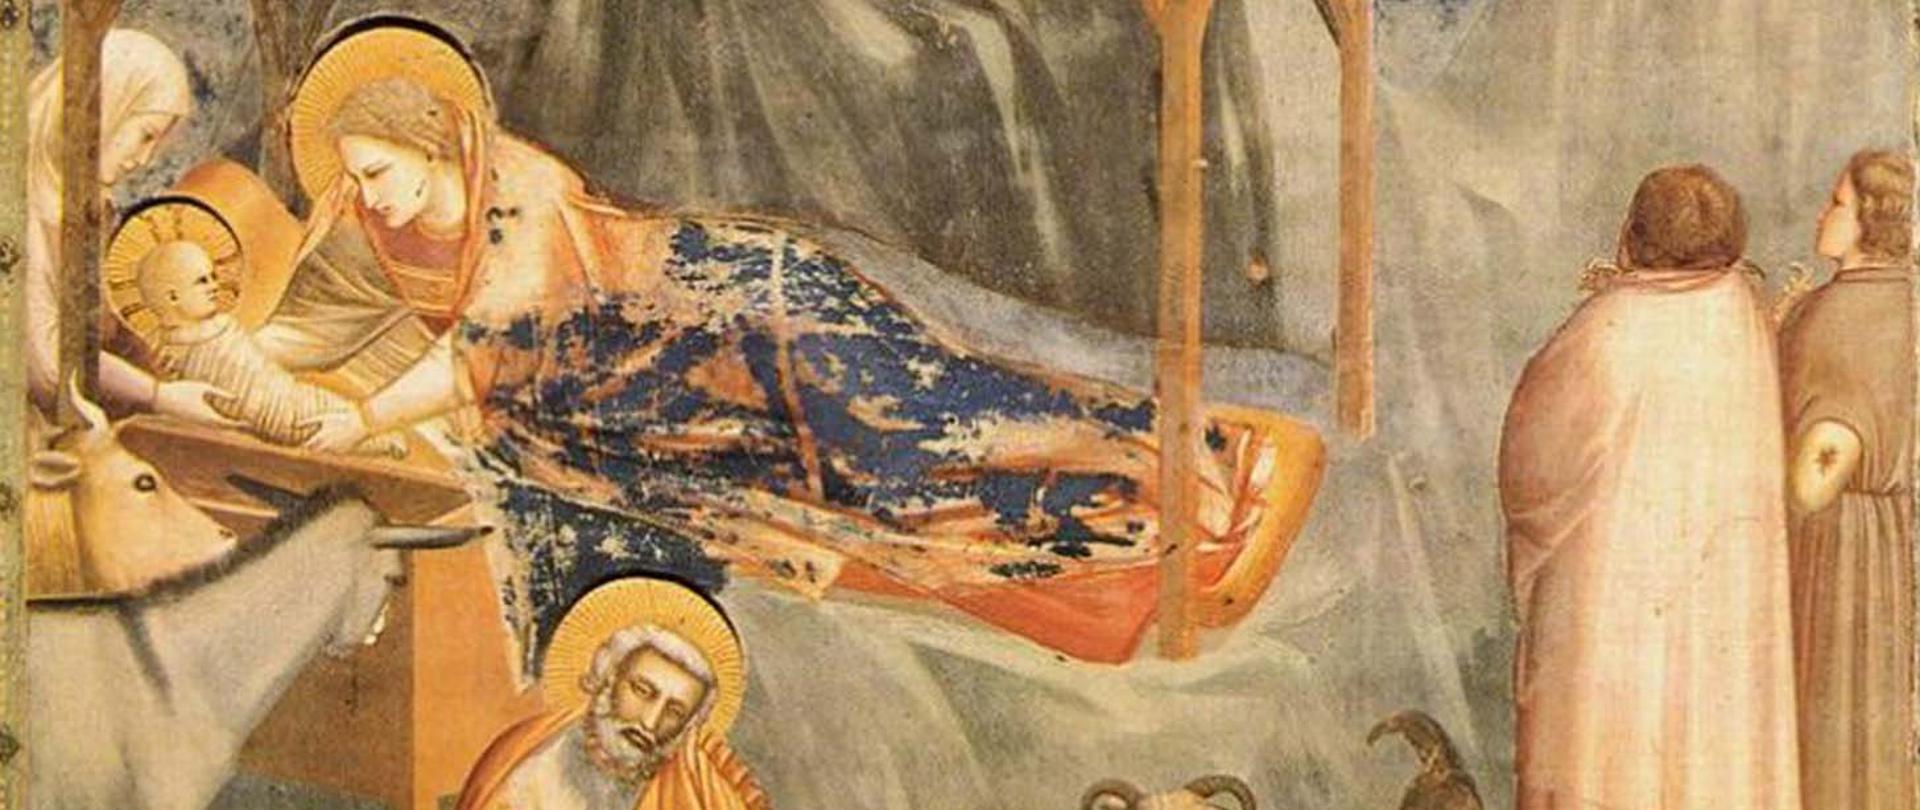 fot. Giotto, Narodziny ( Sceny z życia Chrystusa), 1304-1306, fresk, Kaplica Scrovegnich, Padwa (fragment)